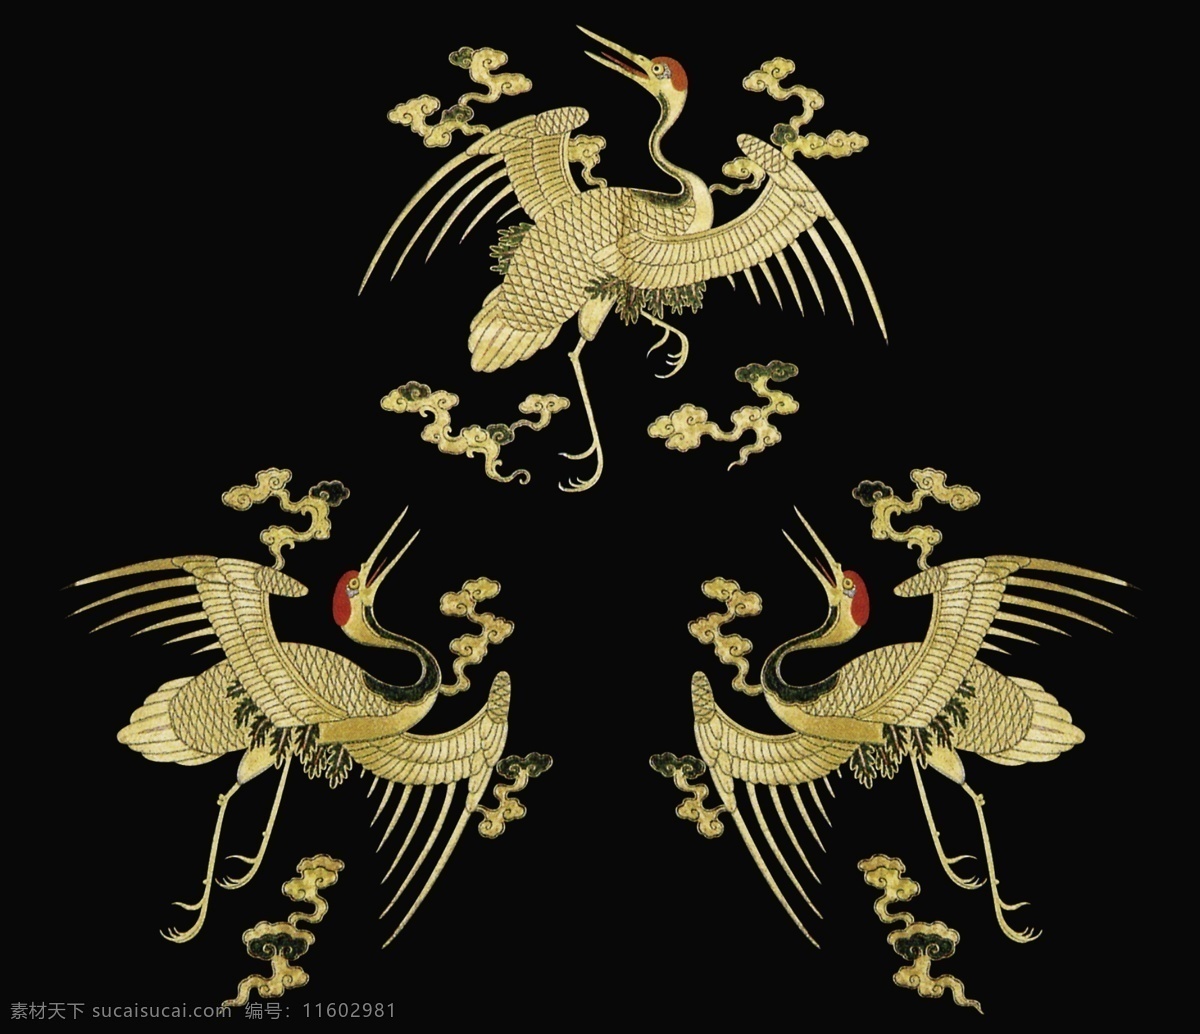 中式 元素 布纹 贴图 三 只 仙鹤 花纹 背景墙 黑金花纹图